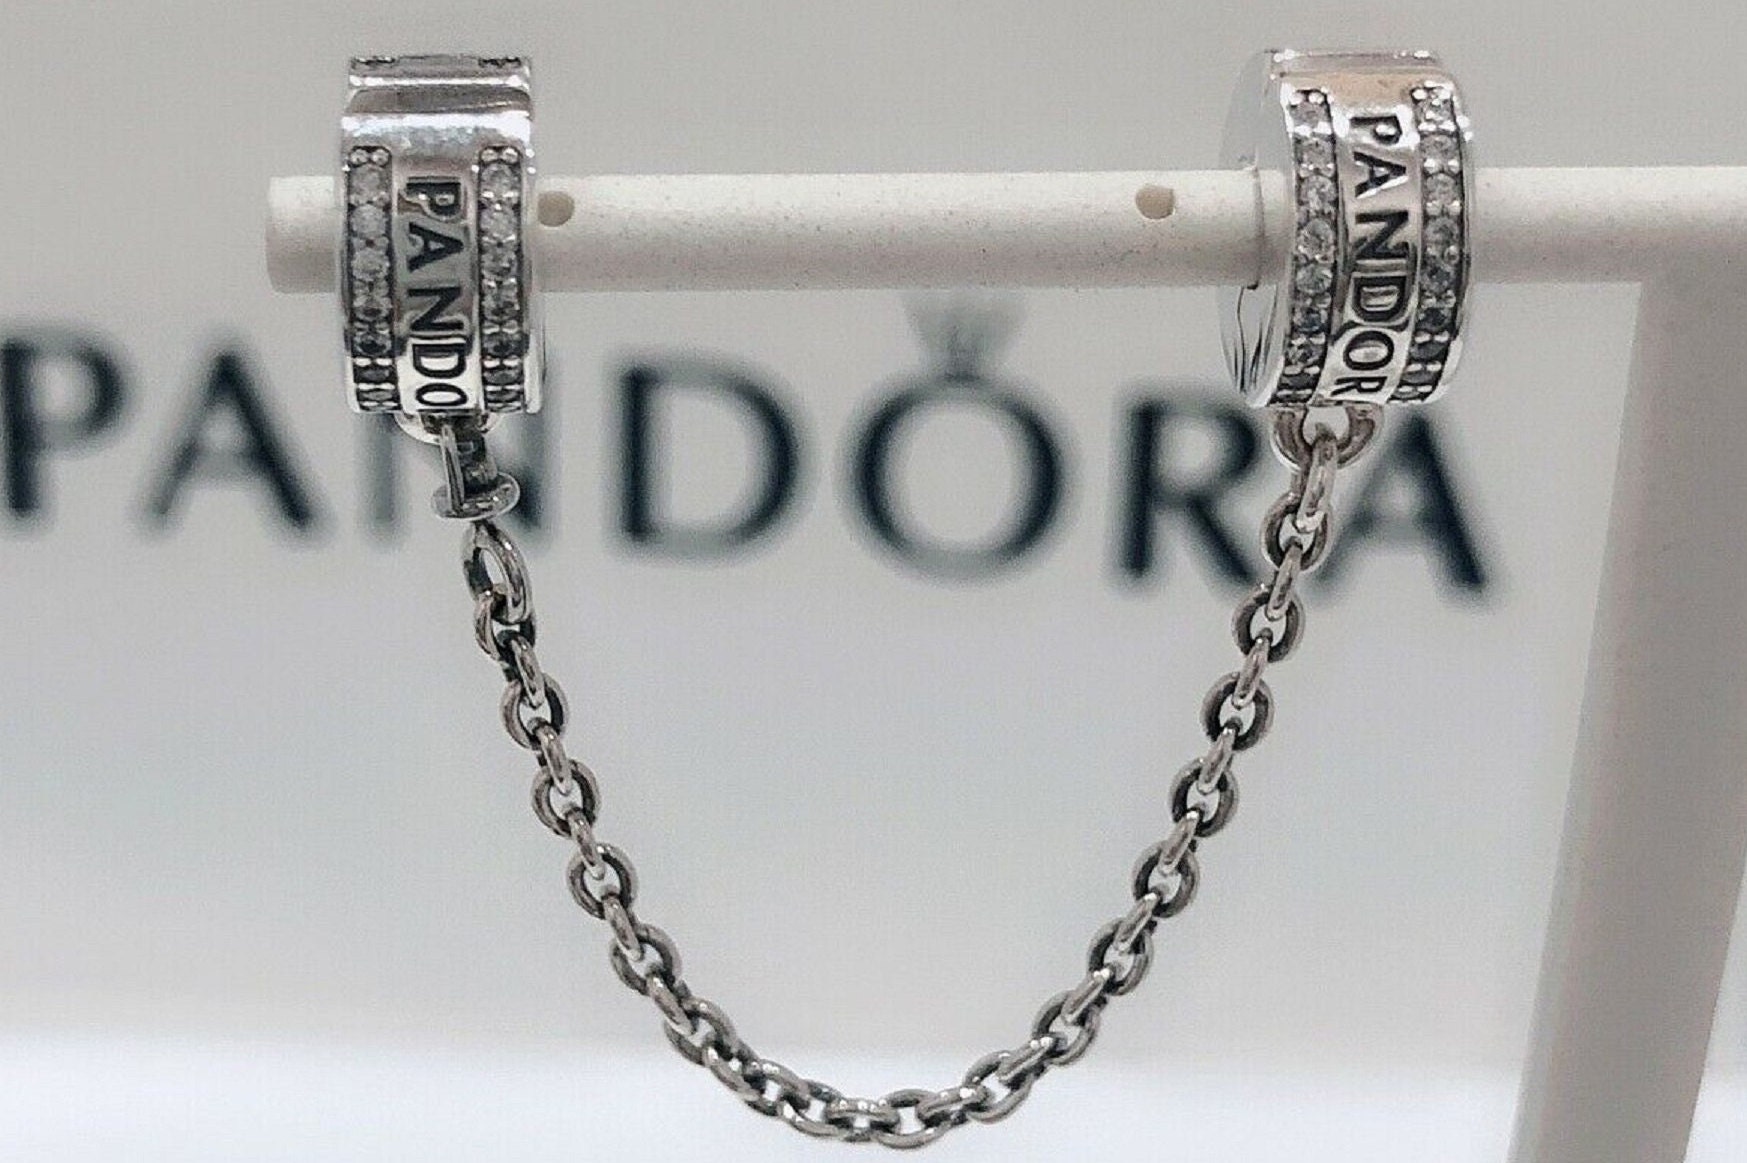 Pandora Bracelet Safty Clip, Original Pandora Charms